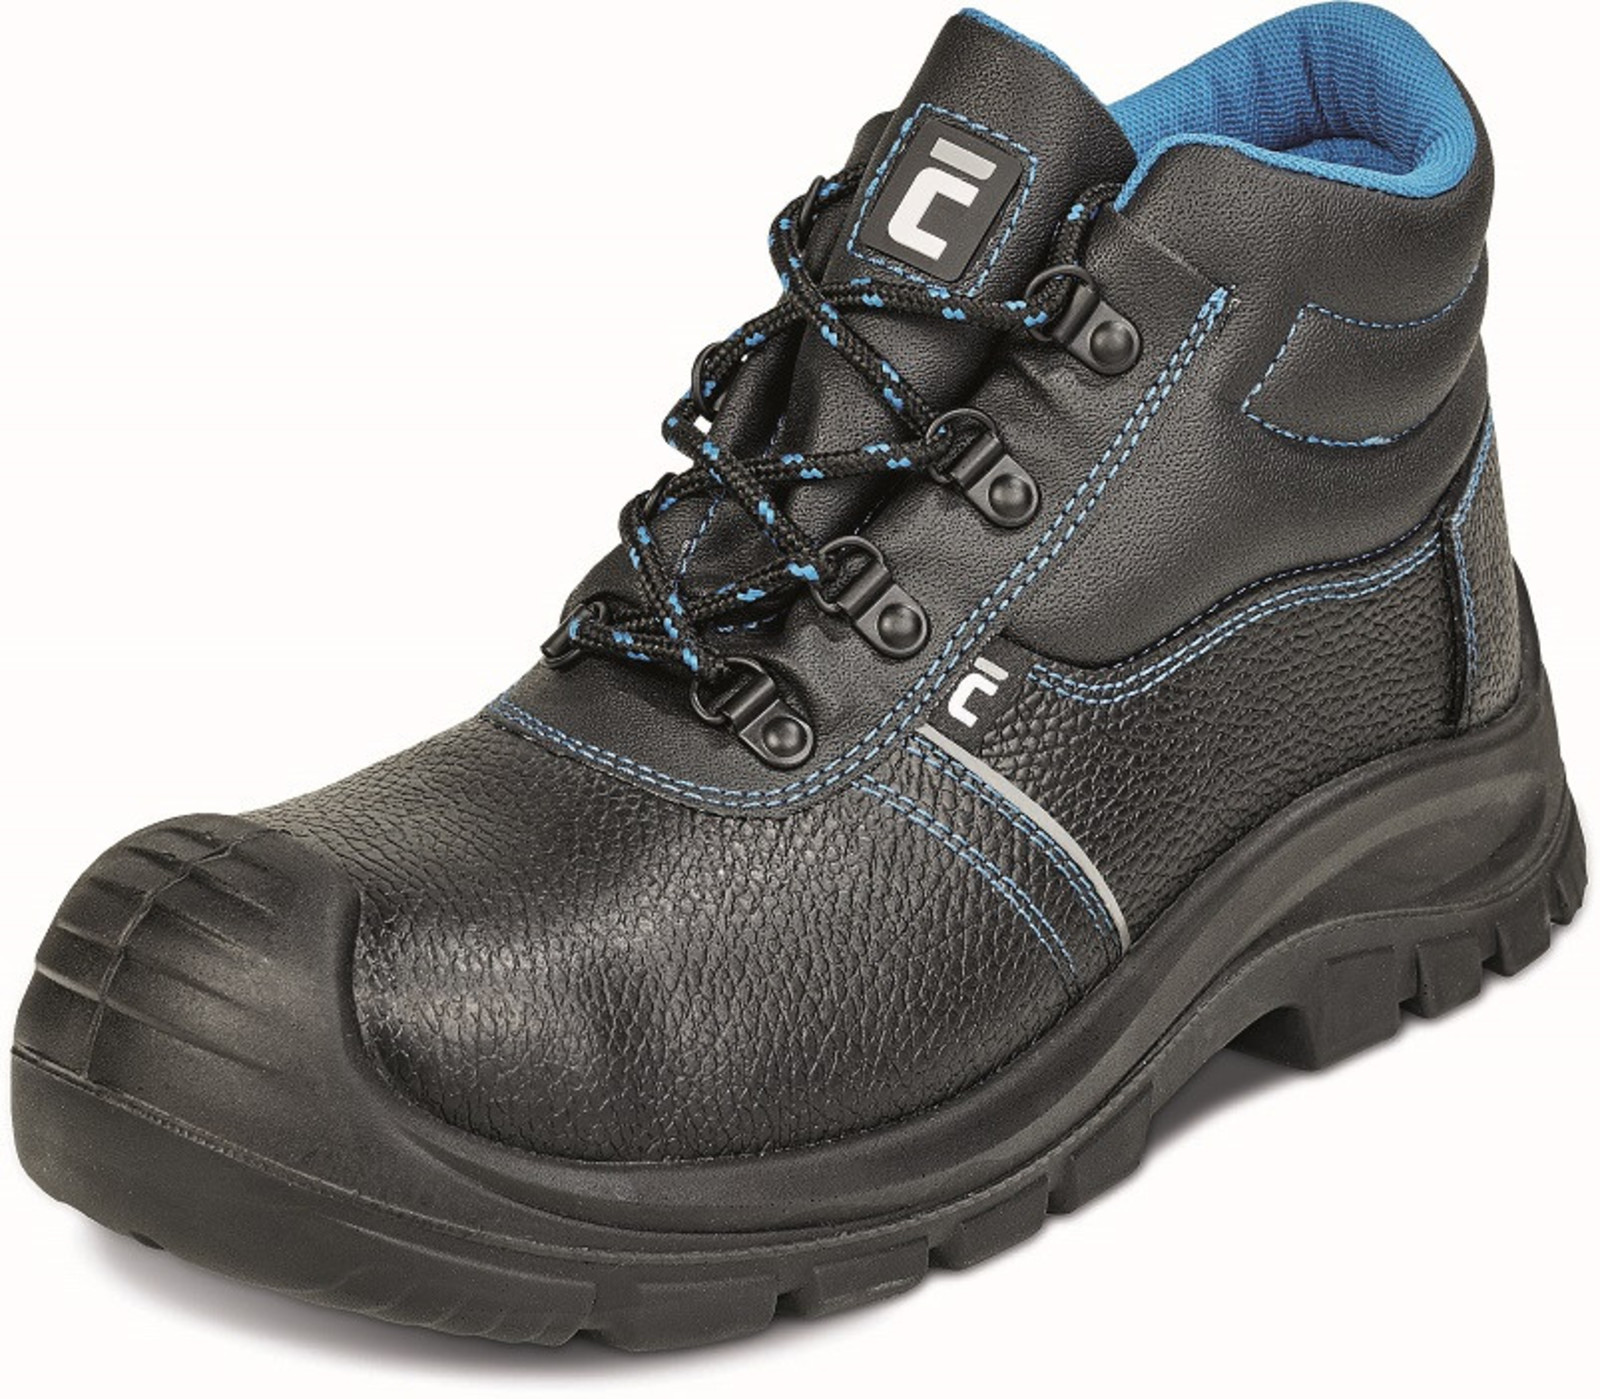 Bezpečnostná obuv Raven XT S1 - veľkosť: 38, farba: čierna